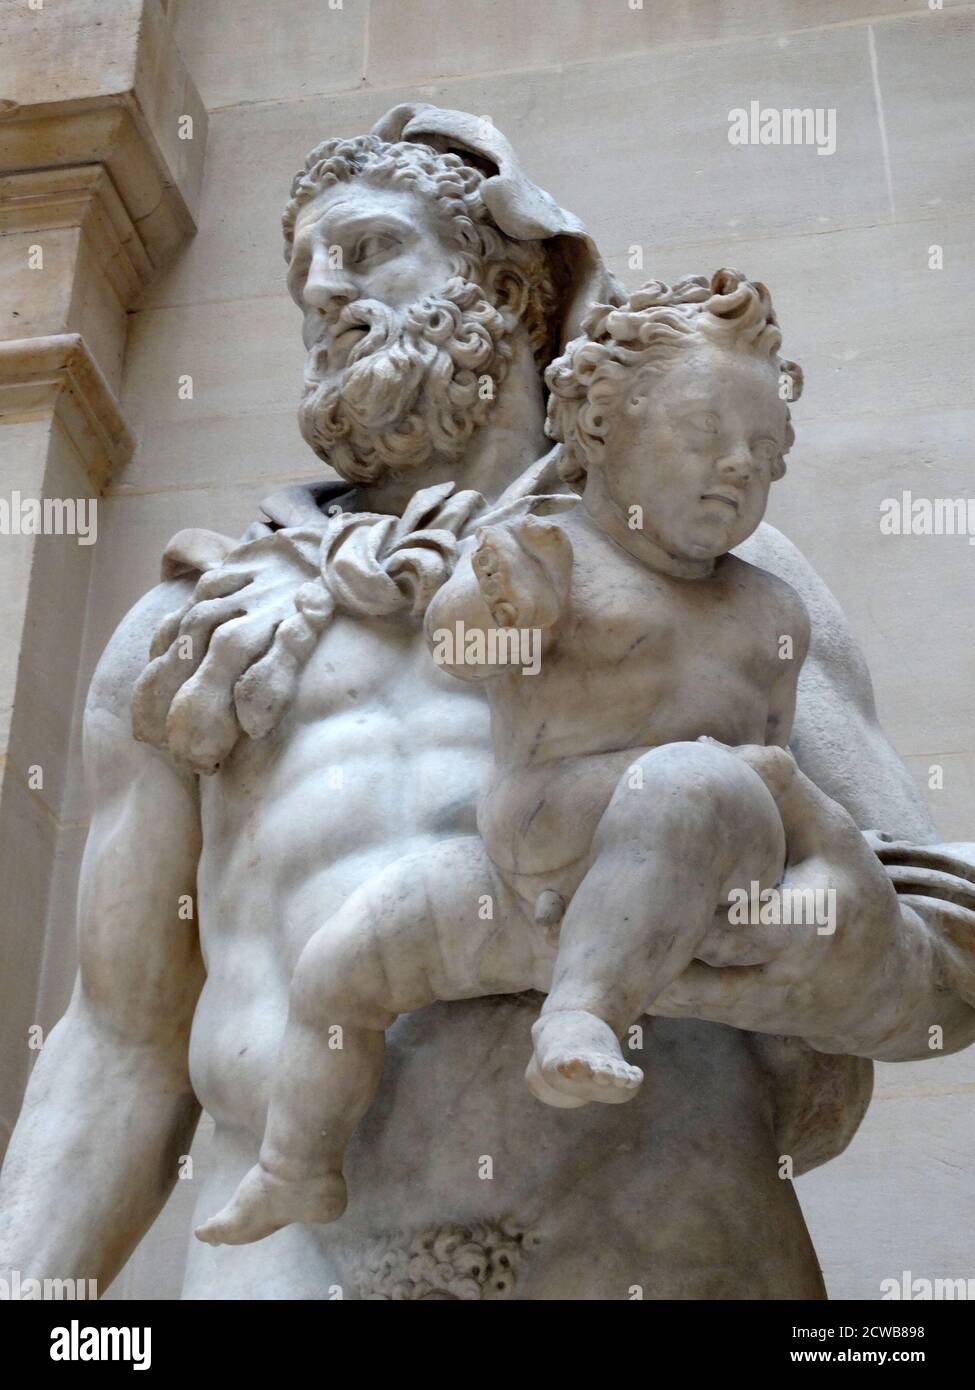 Estatua de mármol que representa a Hércules llevando a su hijo Telephus Foto de stock